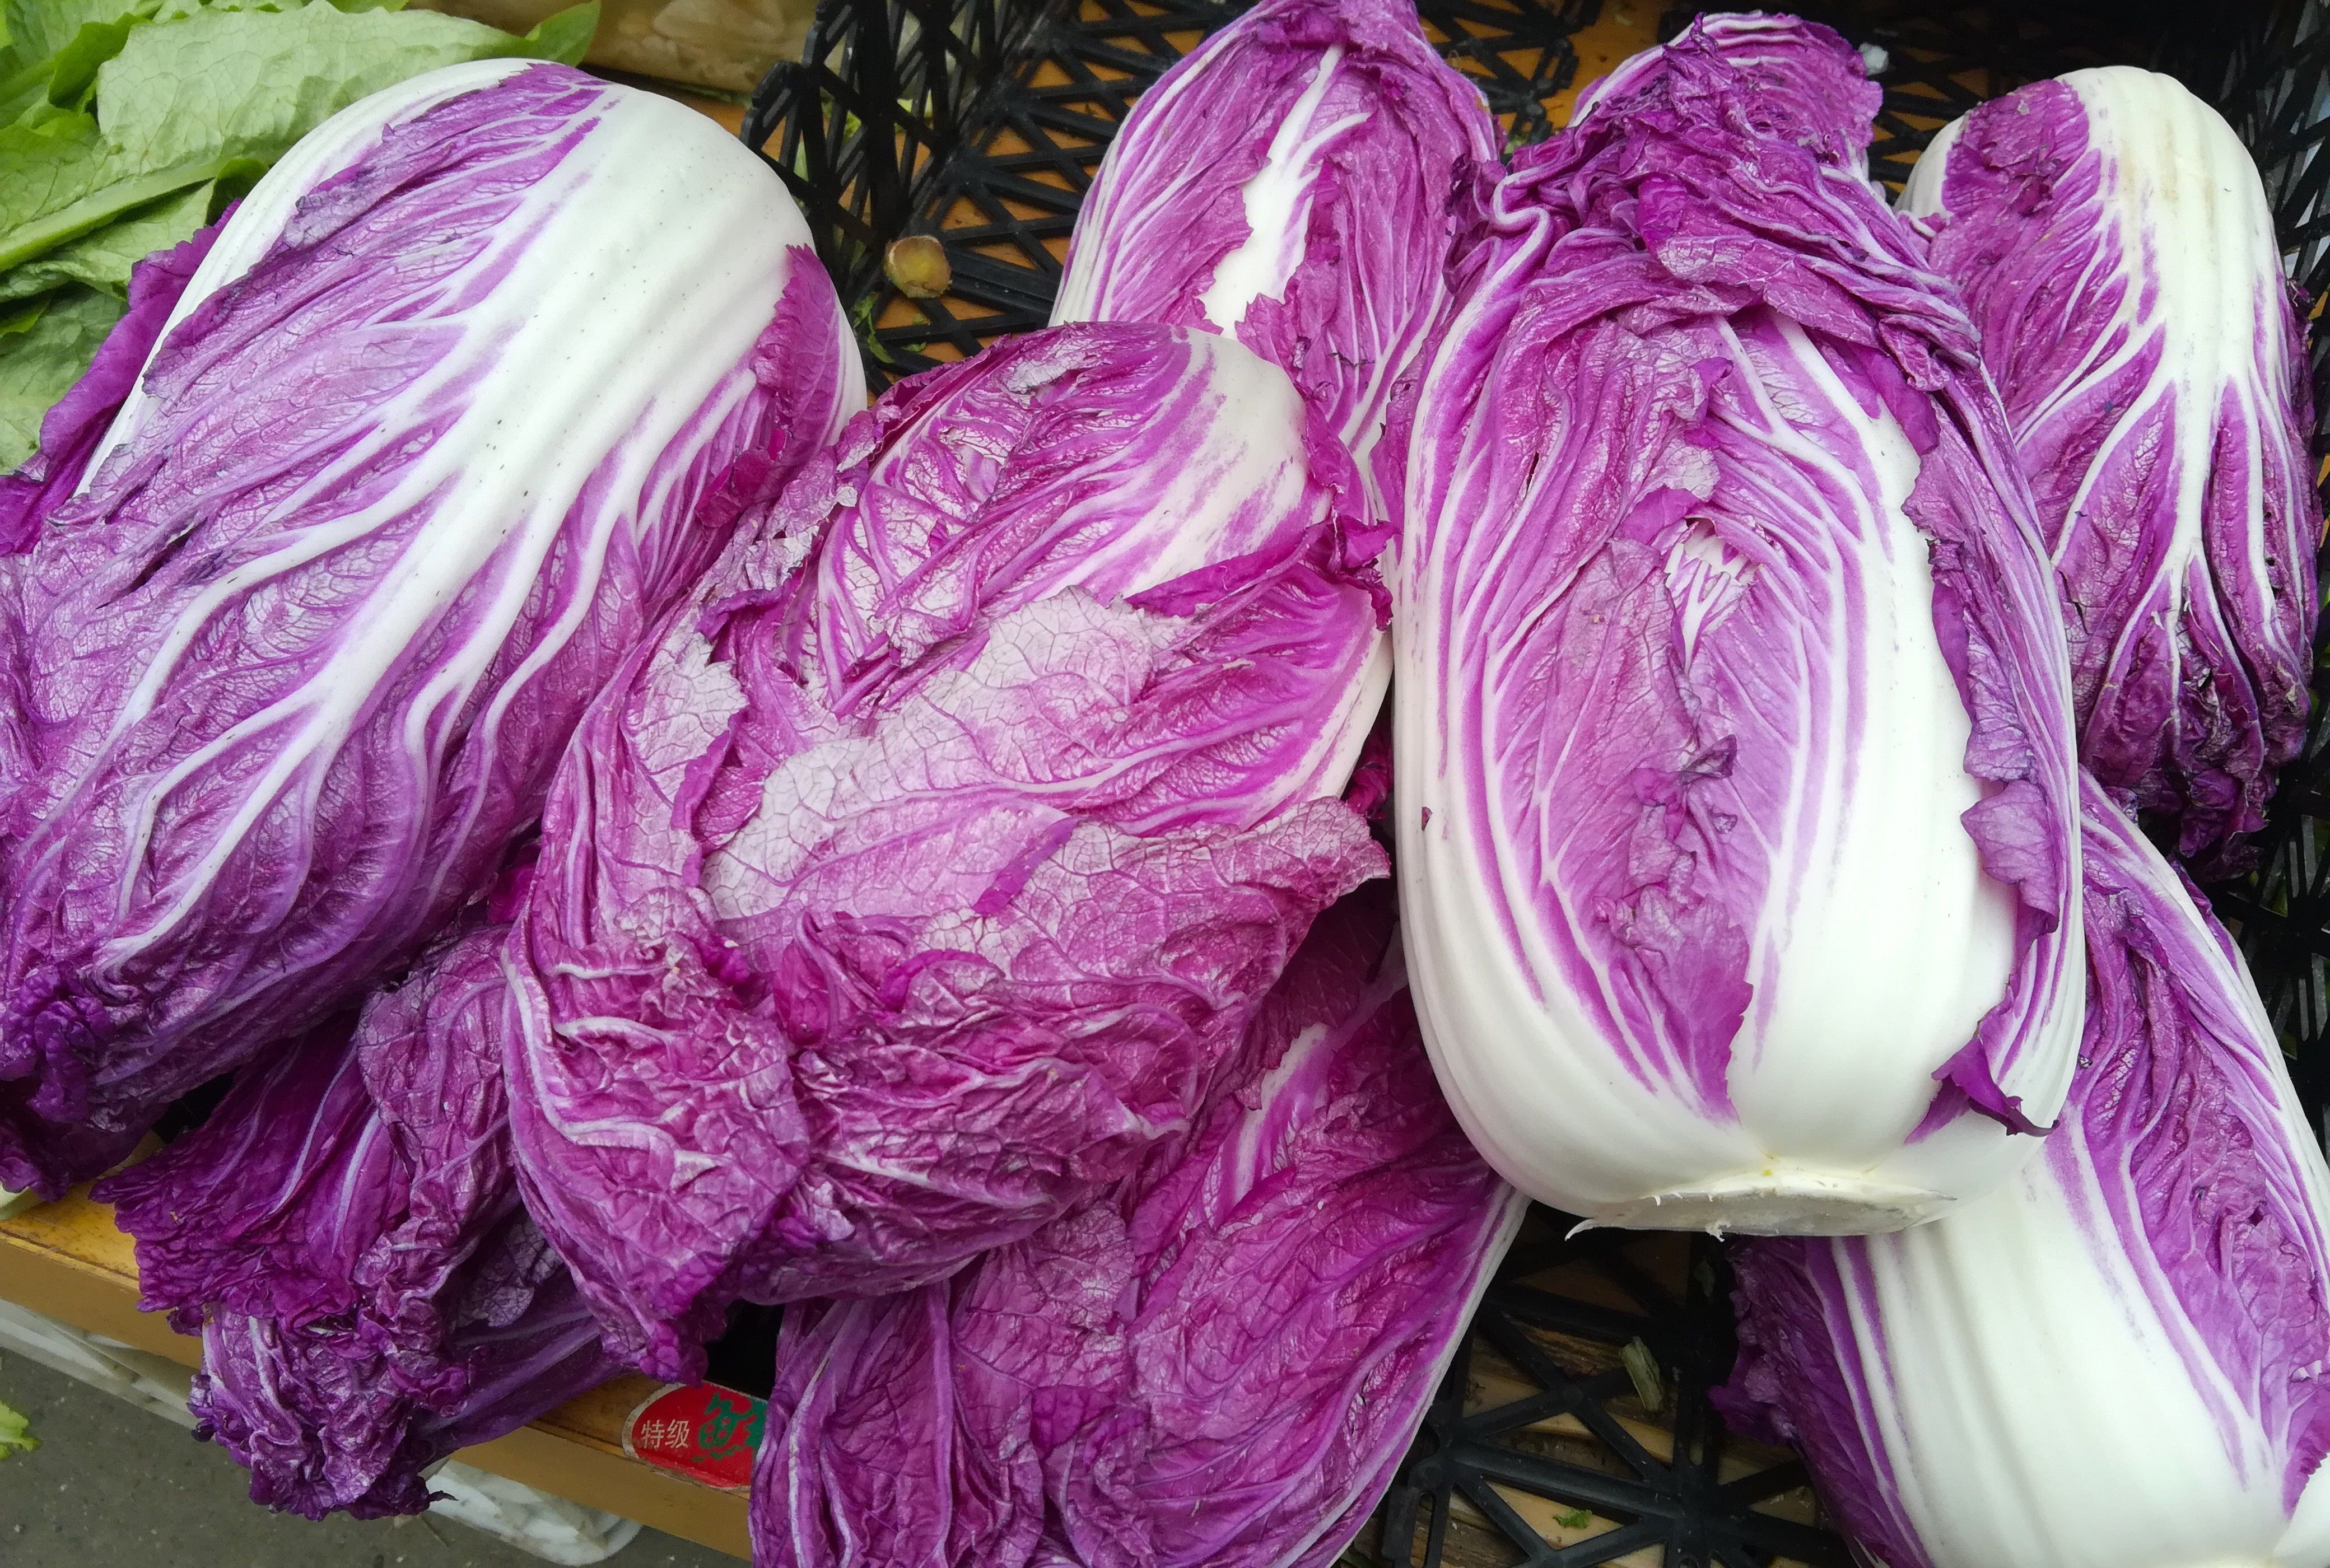 紫色大白菜亮相菜市场,售价2元钱一斤;它是转